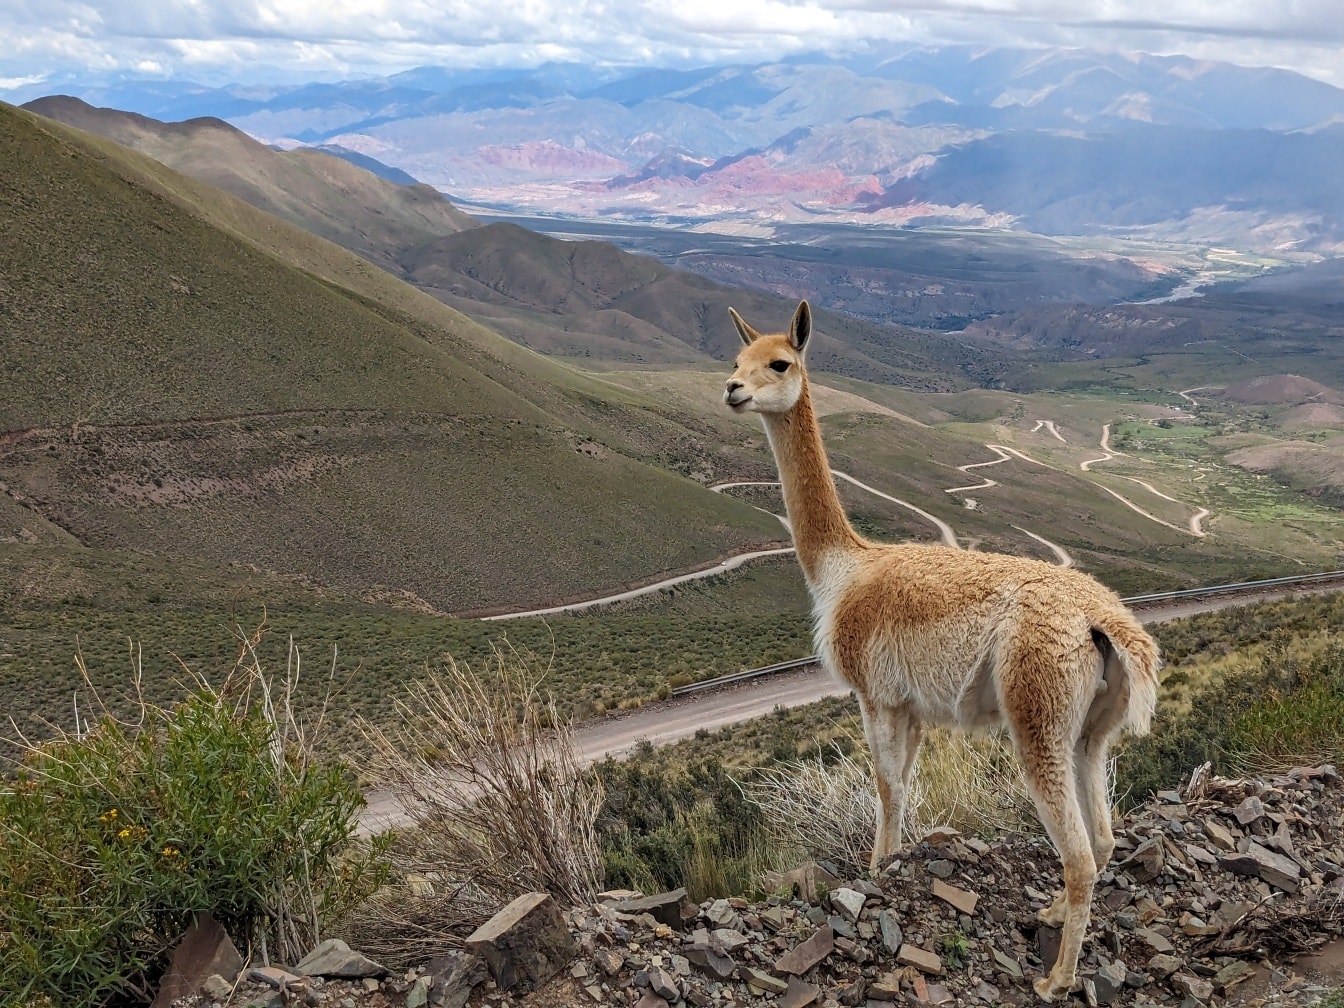 Động vật Vicuña (Lama vicugna) ở Nam Mỹ đứng trên đỉnh đồi ở dãy núi Andes